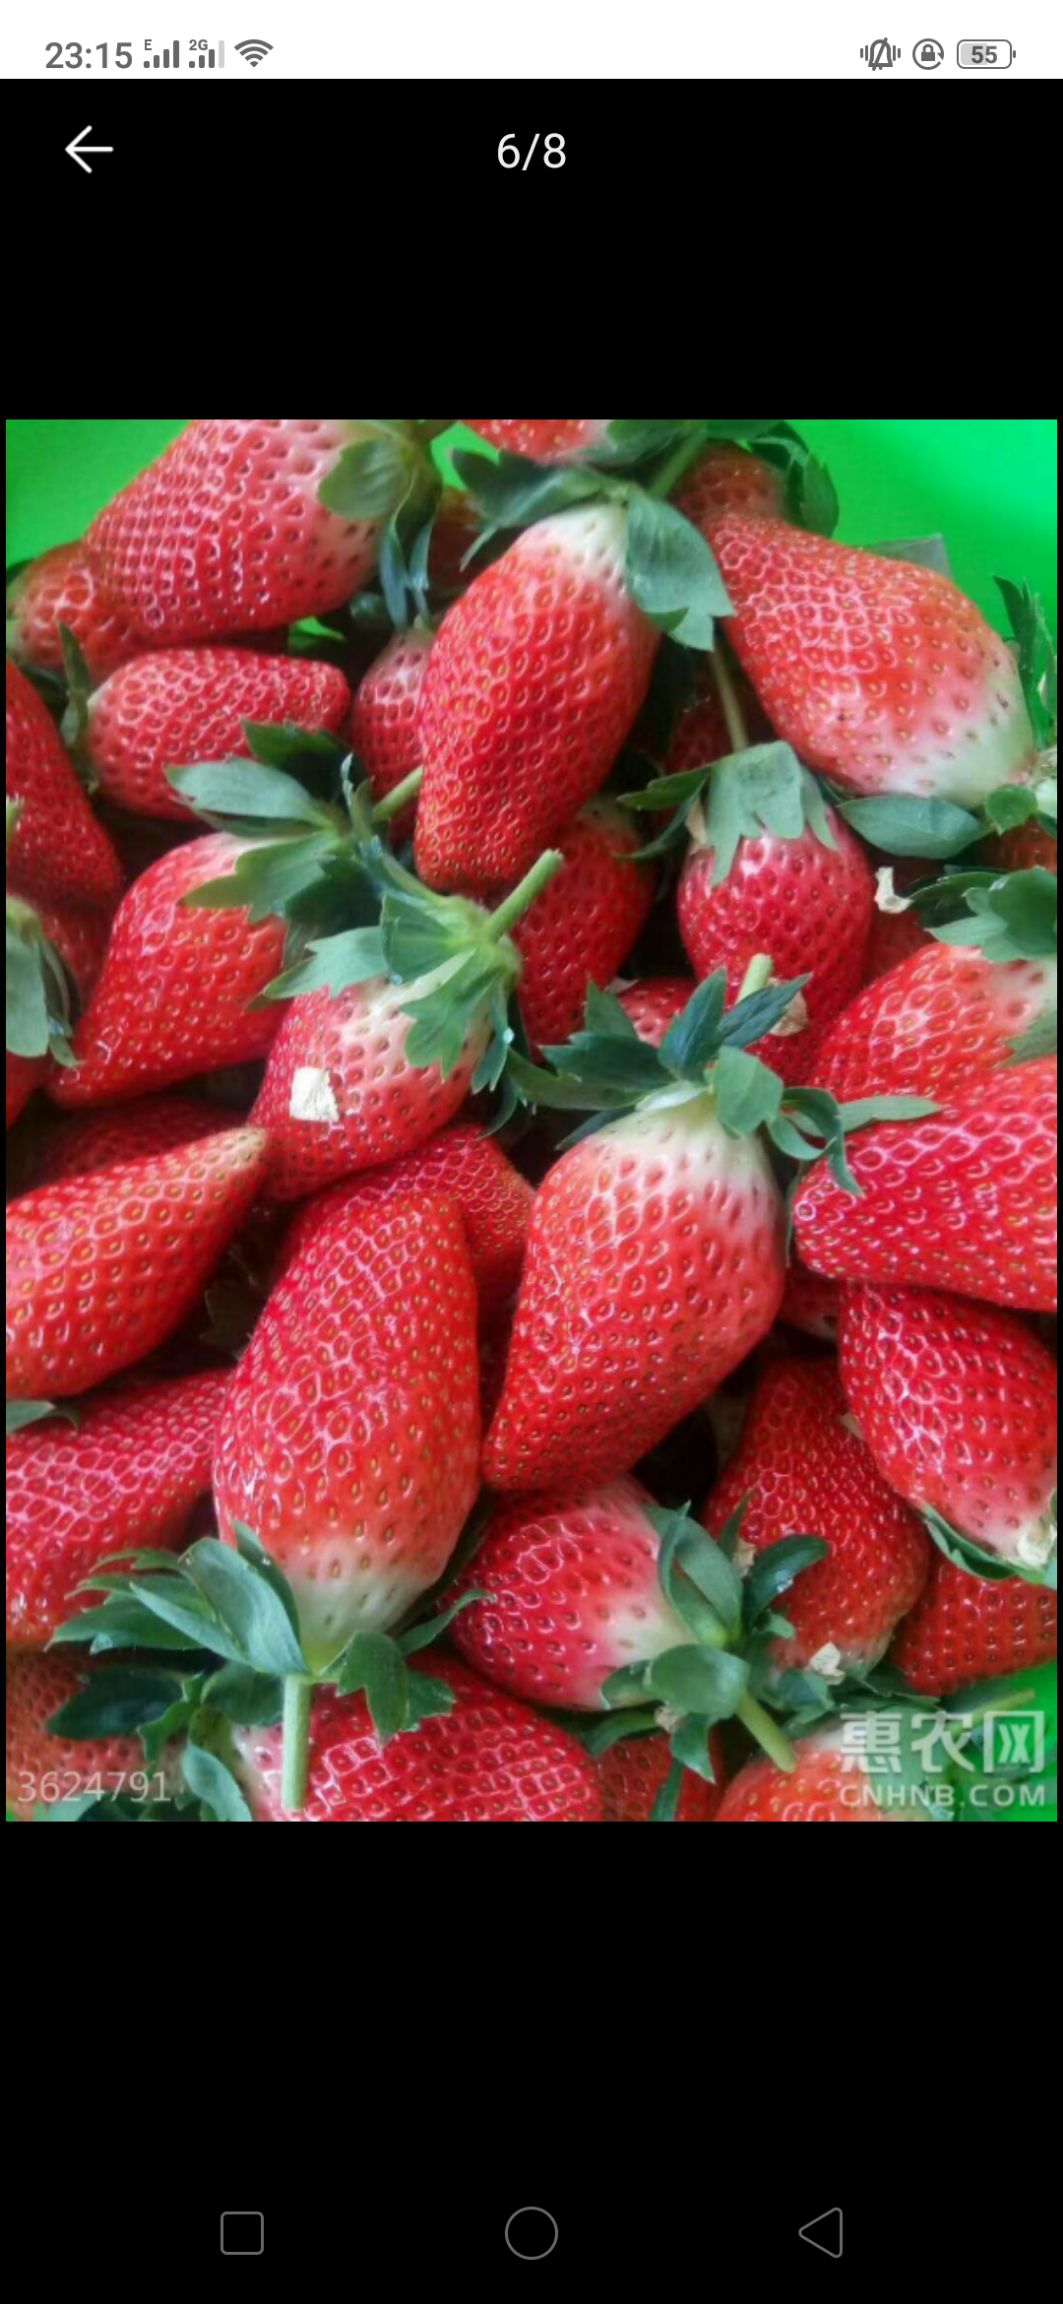 蒙特瑞草莓 20克以上